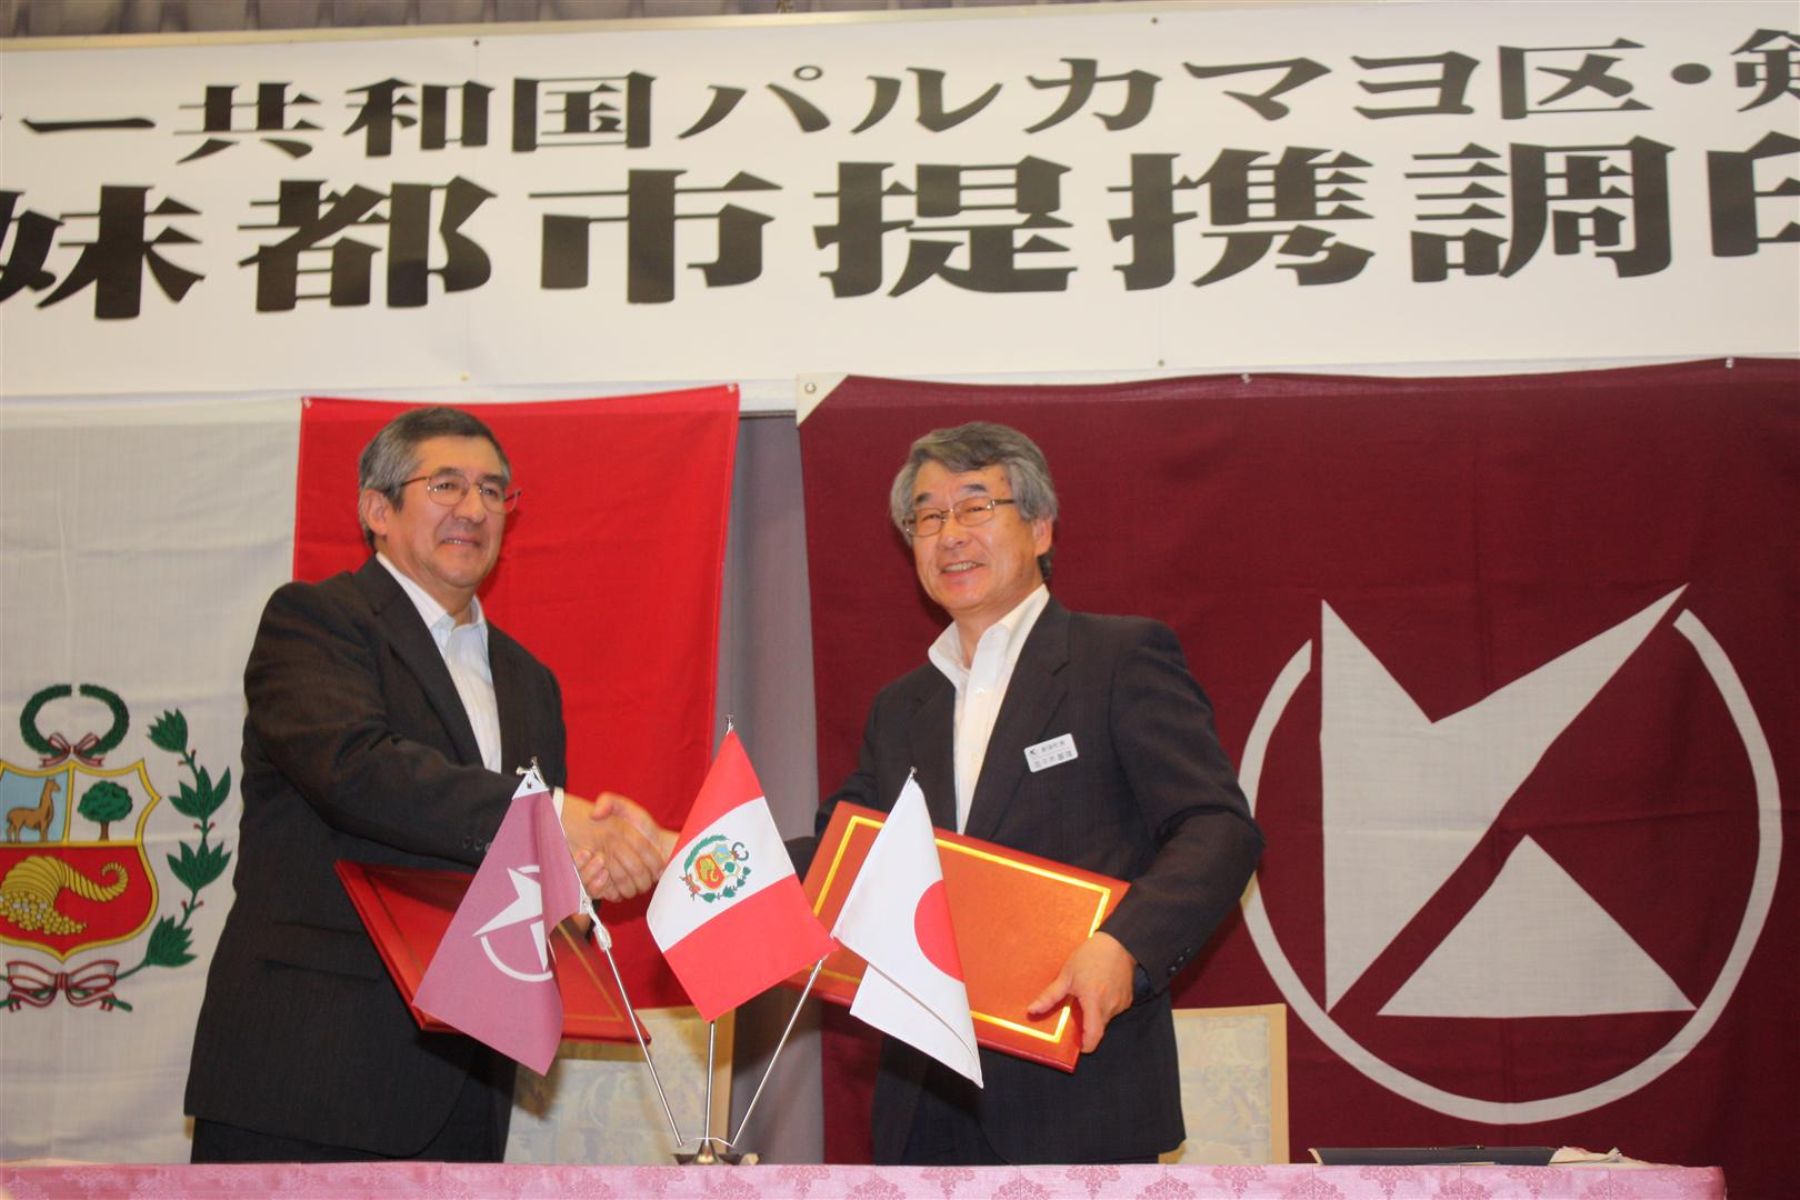 Ceremonia suscripción Hermanamiento entre Kembuchi. Alcalde Kenbuchi,Tomoo Sasaki y embajador de Perú en Japón,Juan Carlos Capuñay